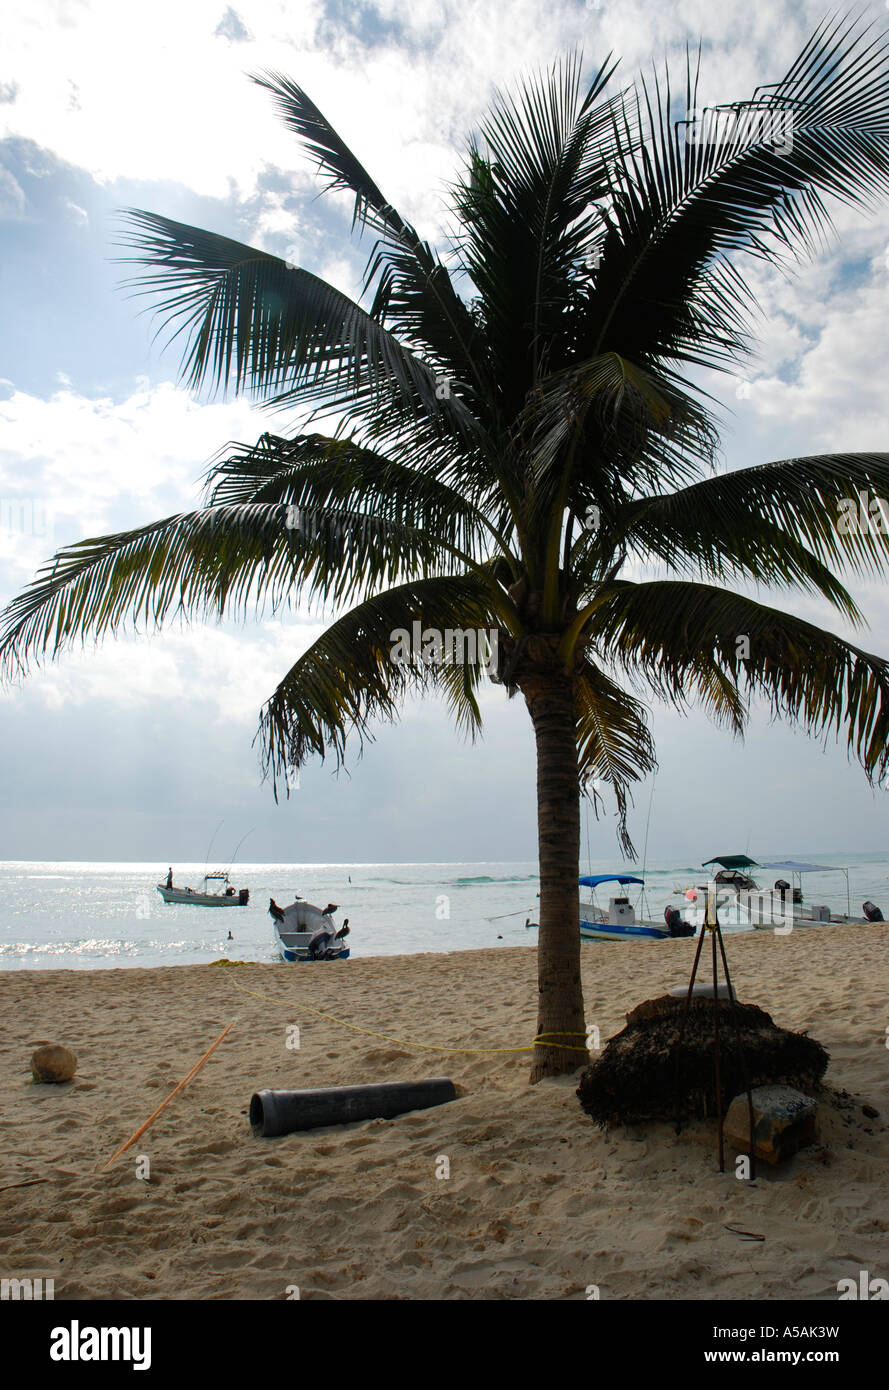 La vita in spiaggia a dieci miglia di spiaggia di Playa del Carmen in Messico barche Palm tree Foto Stock